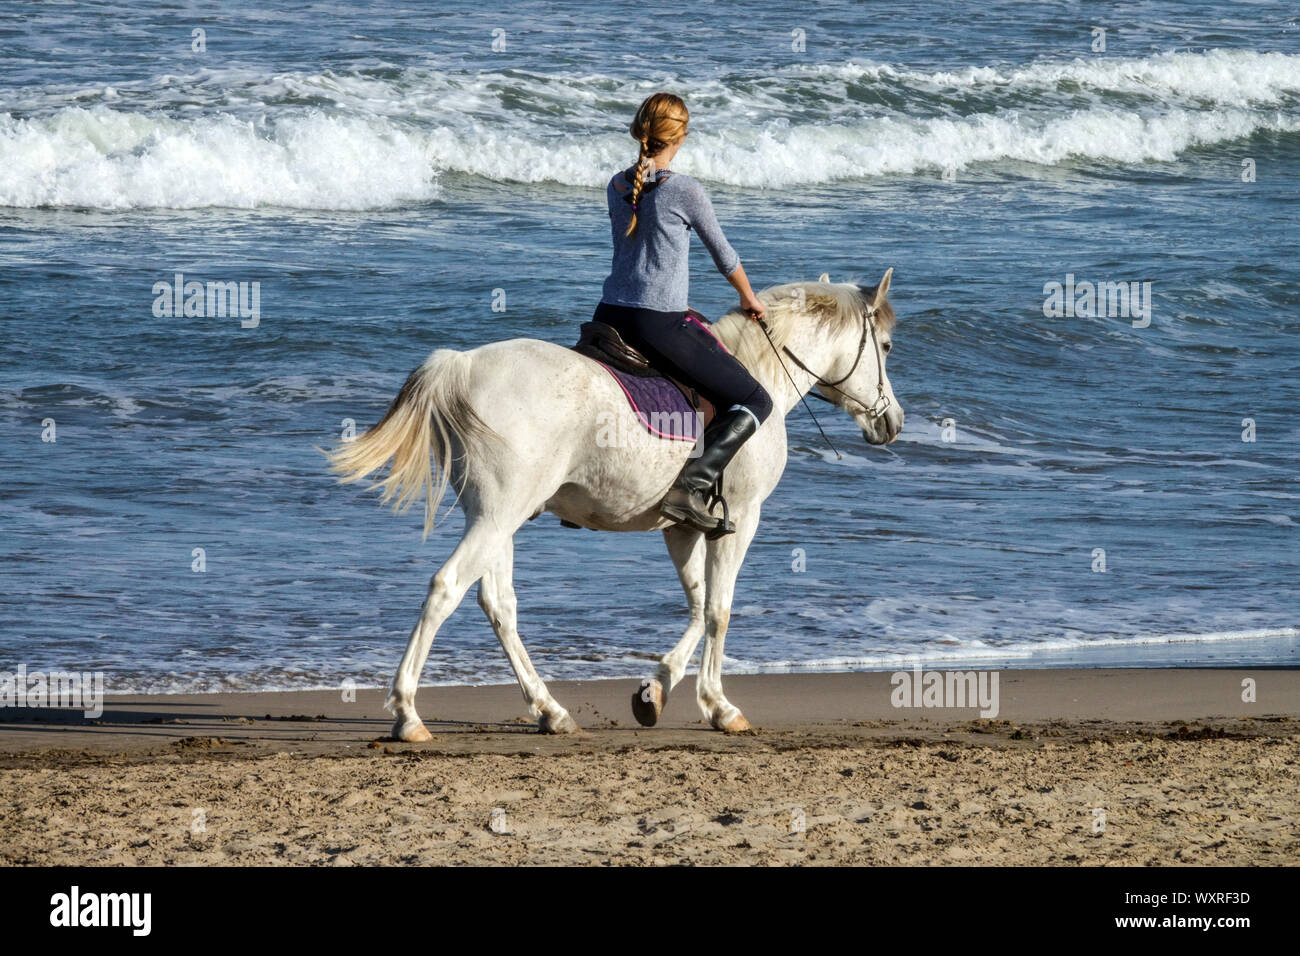 Woman riding white horse on beach Stock Photo